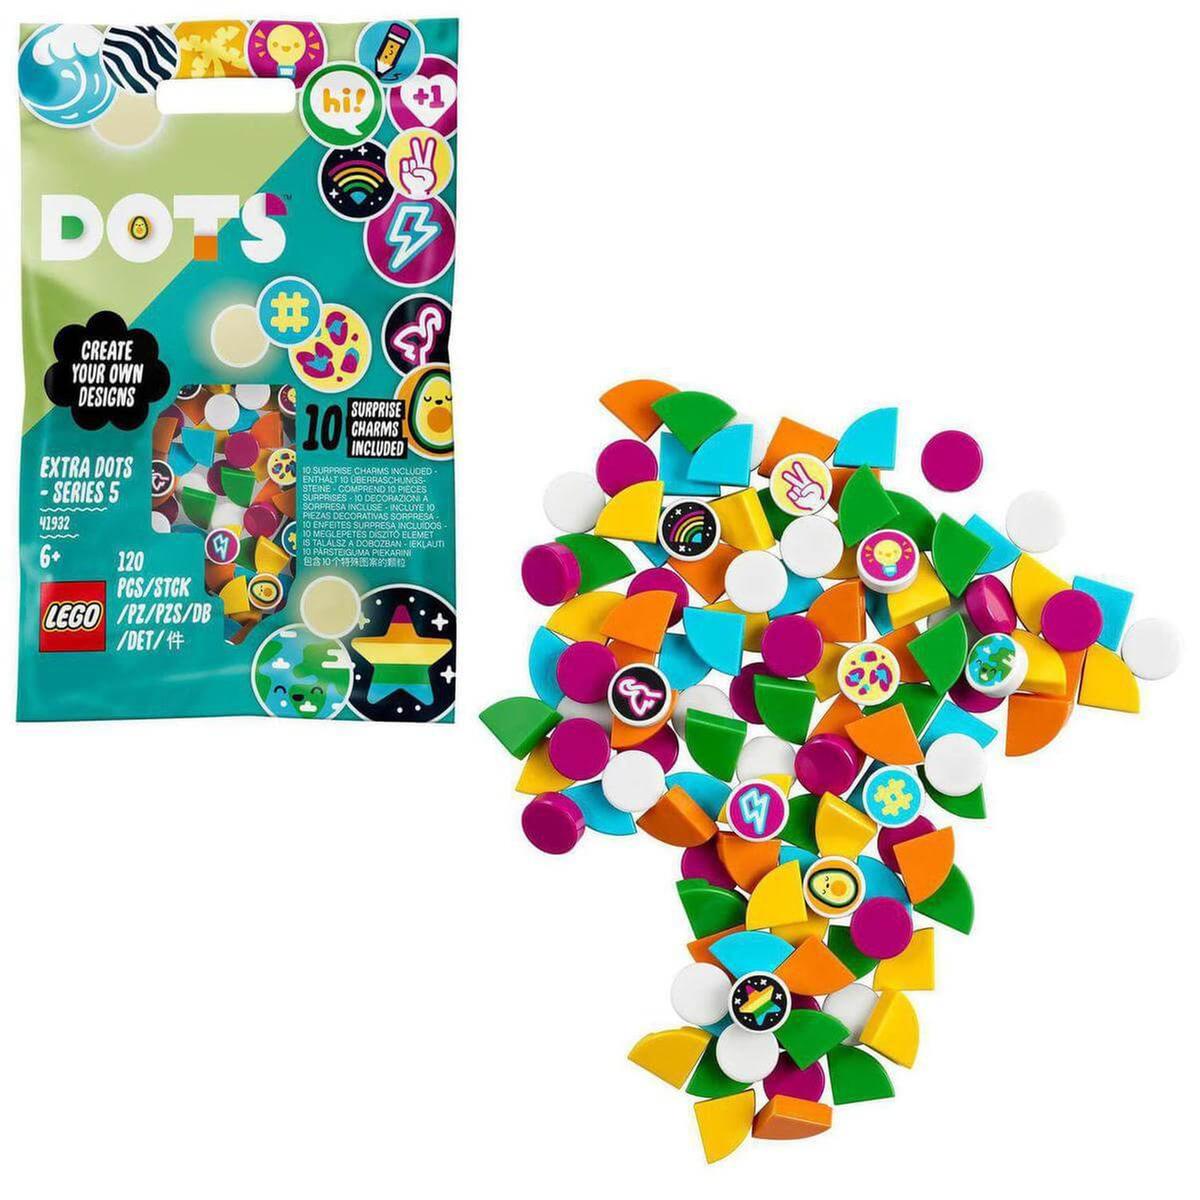 LEGO Dots - Dots extra: edición 5 - 41932 | Lego Elves | Toys"R"Us España